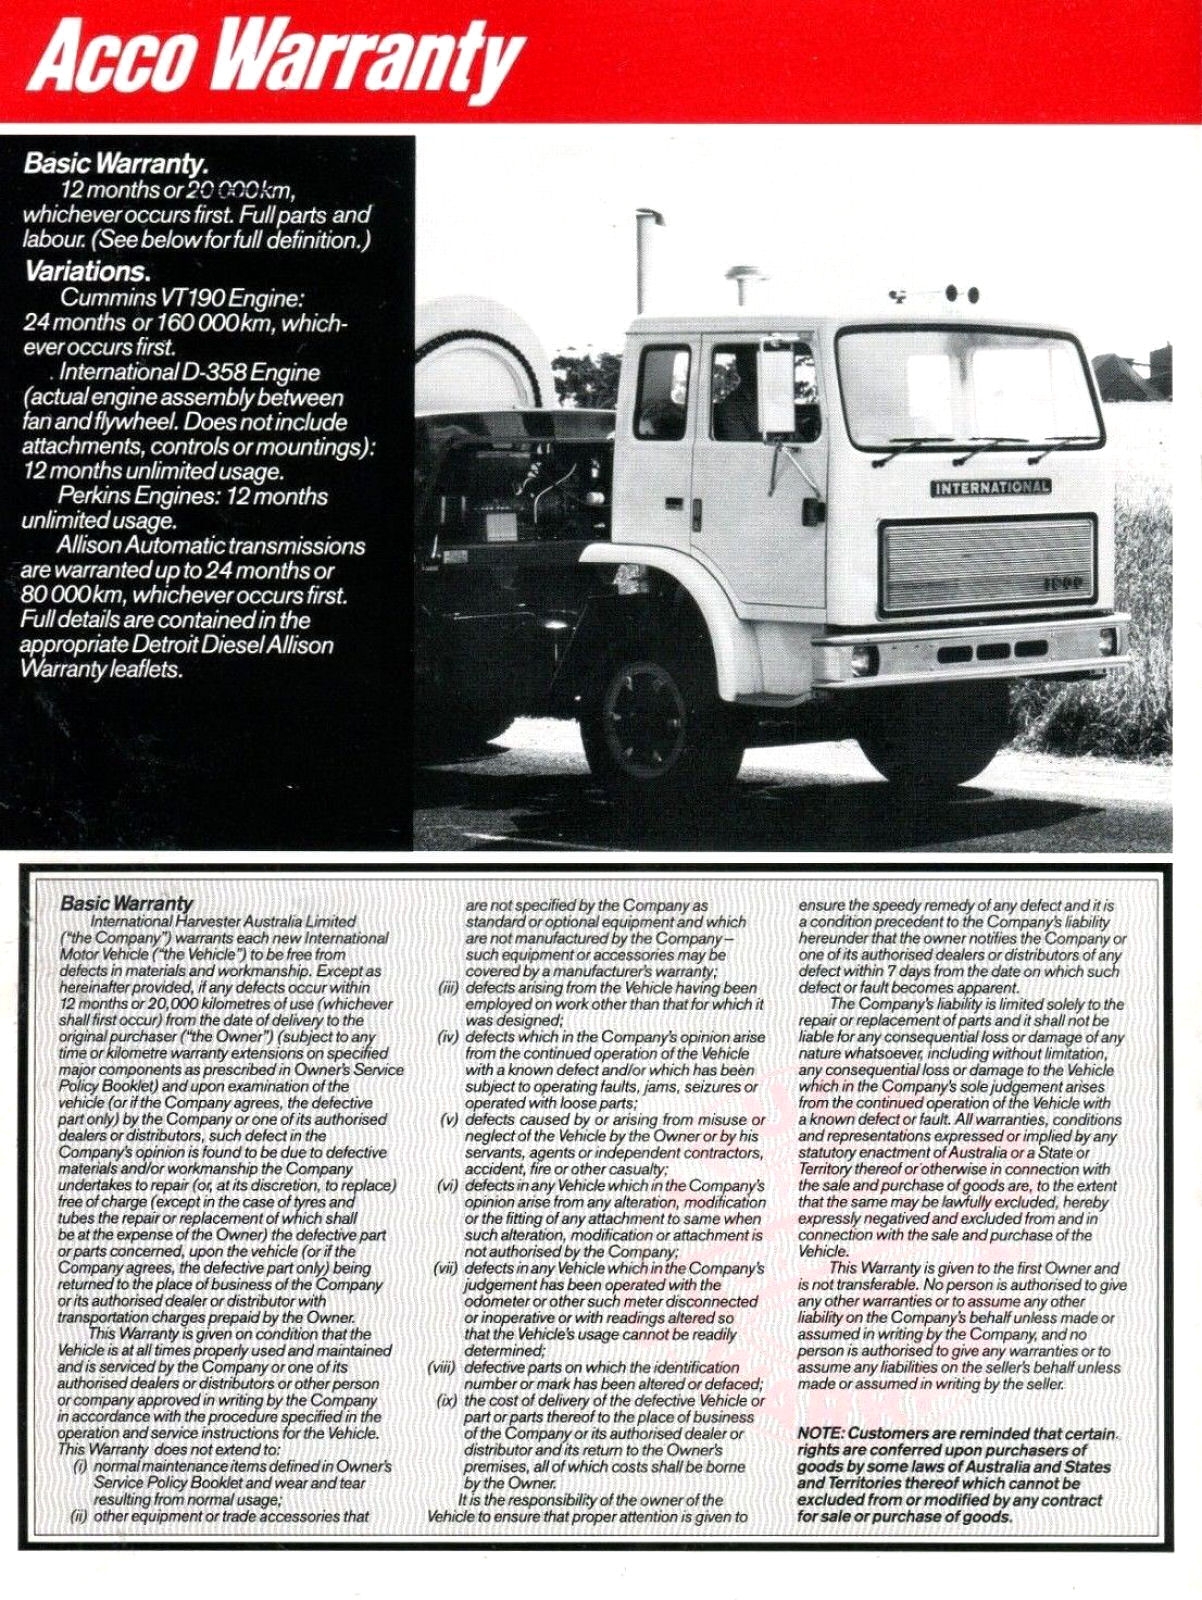 1985 International Truck Warranty (Aus)-03